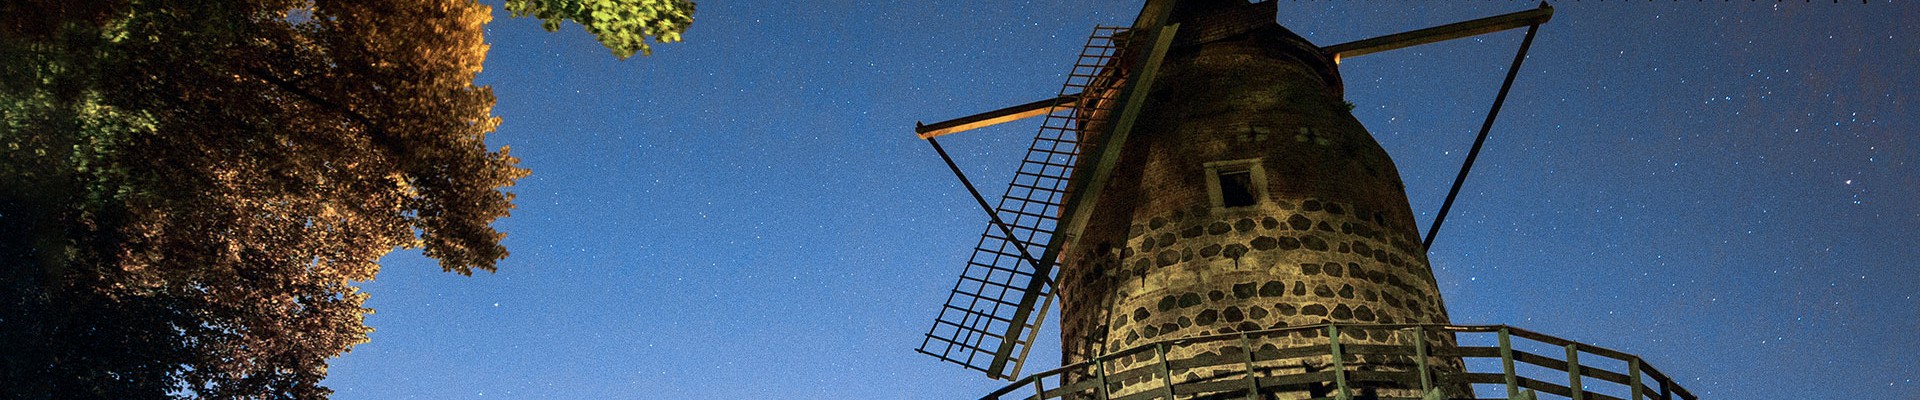 Die historische Mühle der Stadt Zons vor Sternenhimmel.